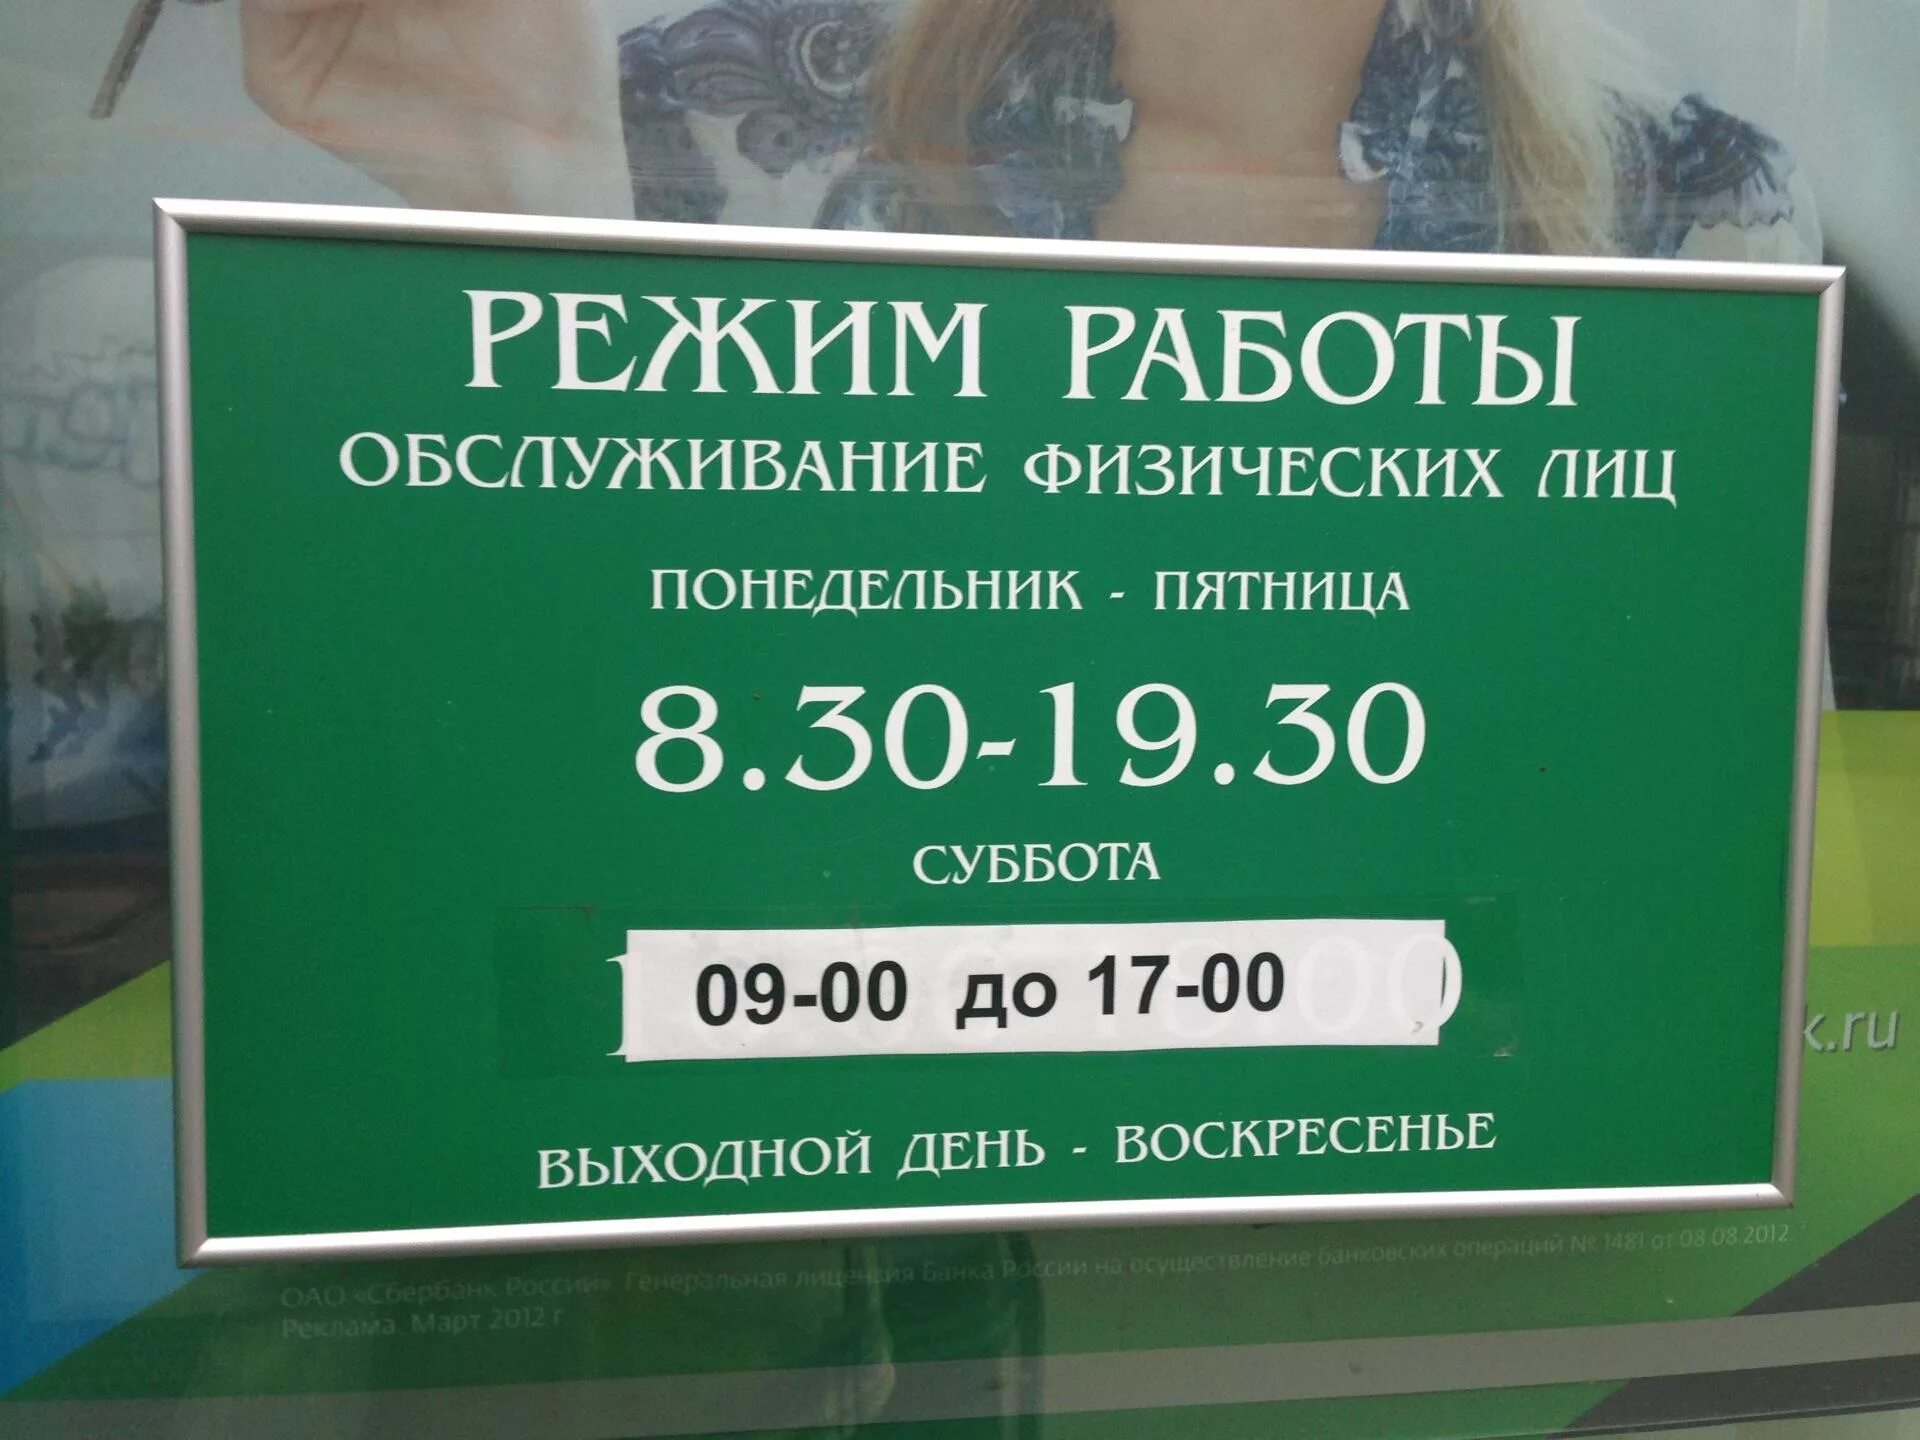 Работа сбербанк егорьевск. Рабочие дни Сбербанка. График работы Сбербанка в Москве. Сбербанк работает в субботу. Суббота воскресенье Сбербанк работает.